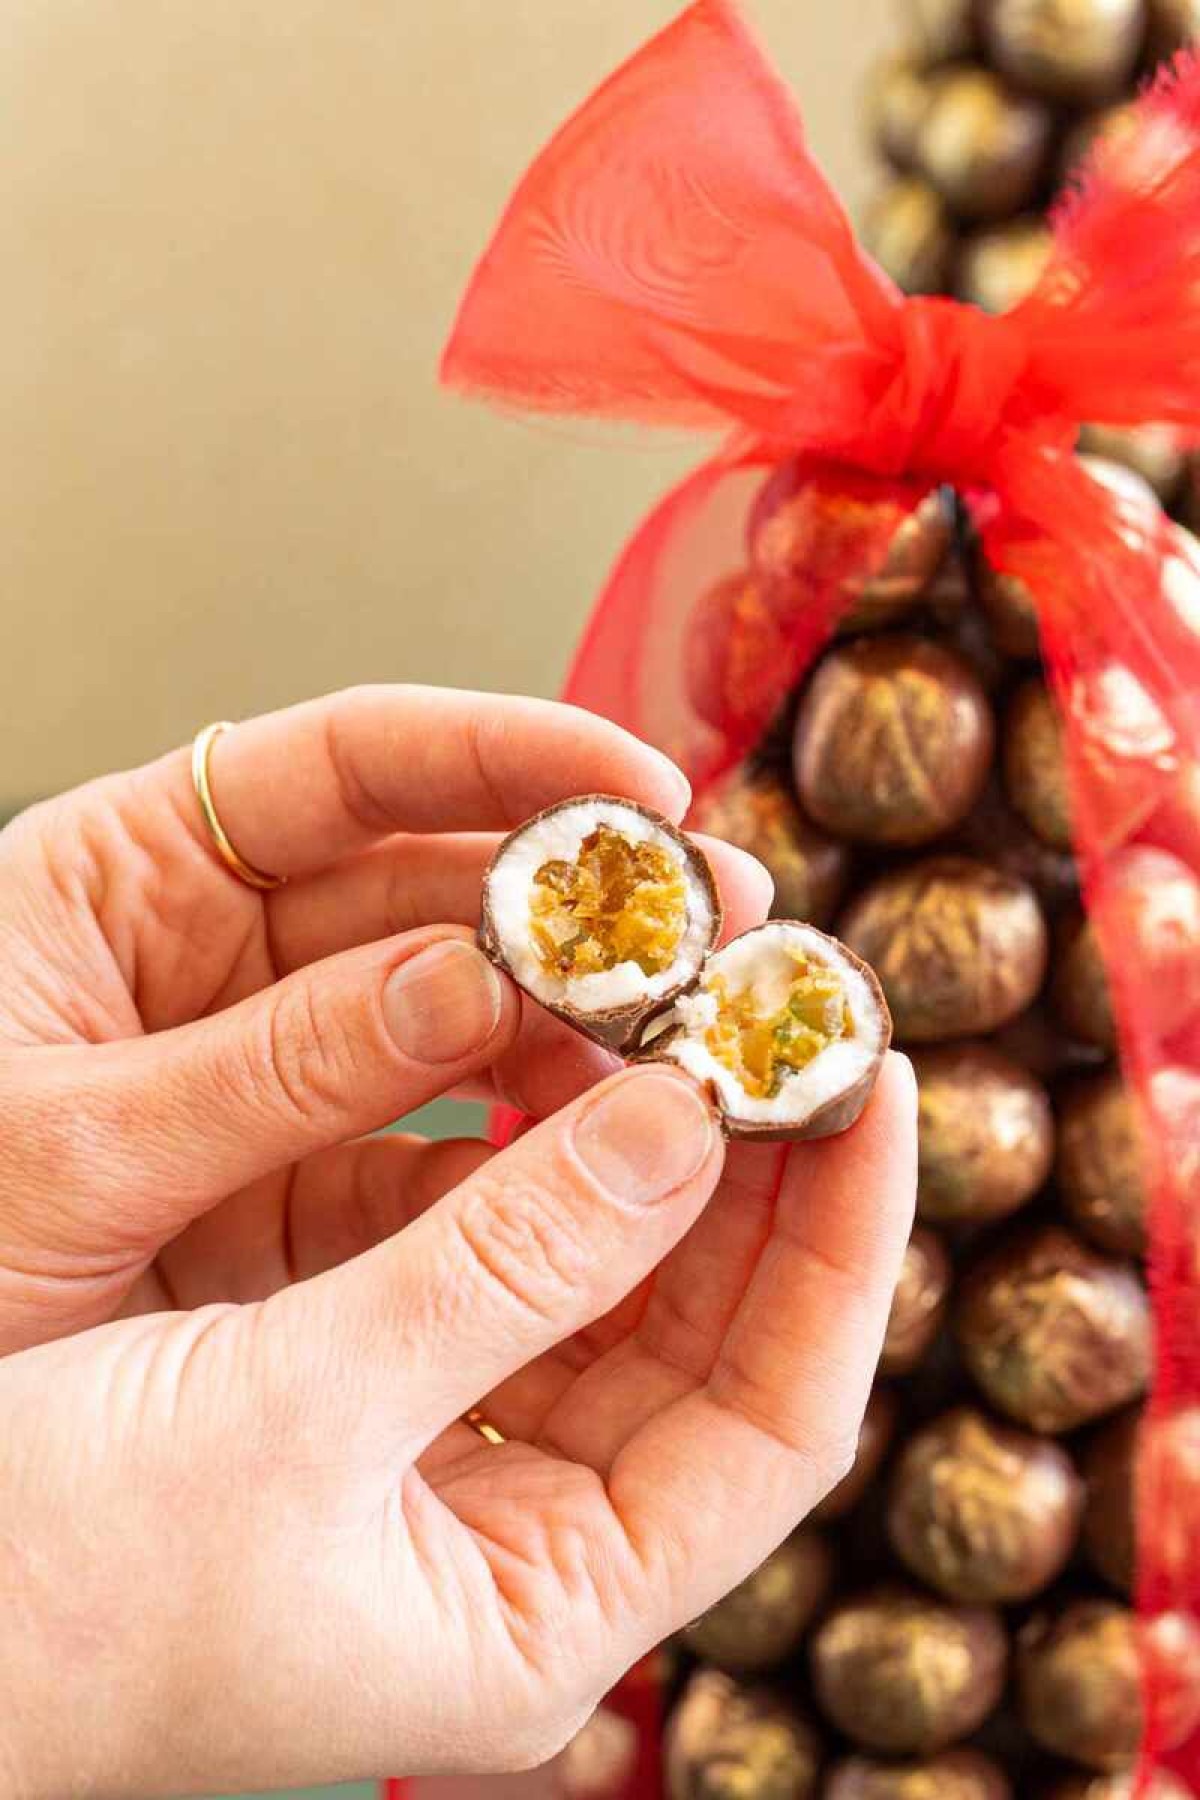 Para que a árvore tenha sabores natalinos, Mariana Mussi envolve o panetone com frutas cristalizadas na massa de bala de coco e cobre com chocolate meio amargo 